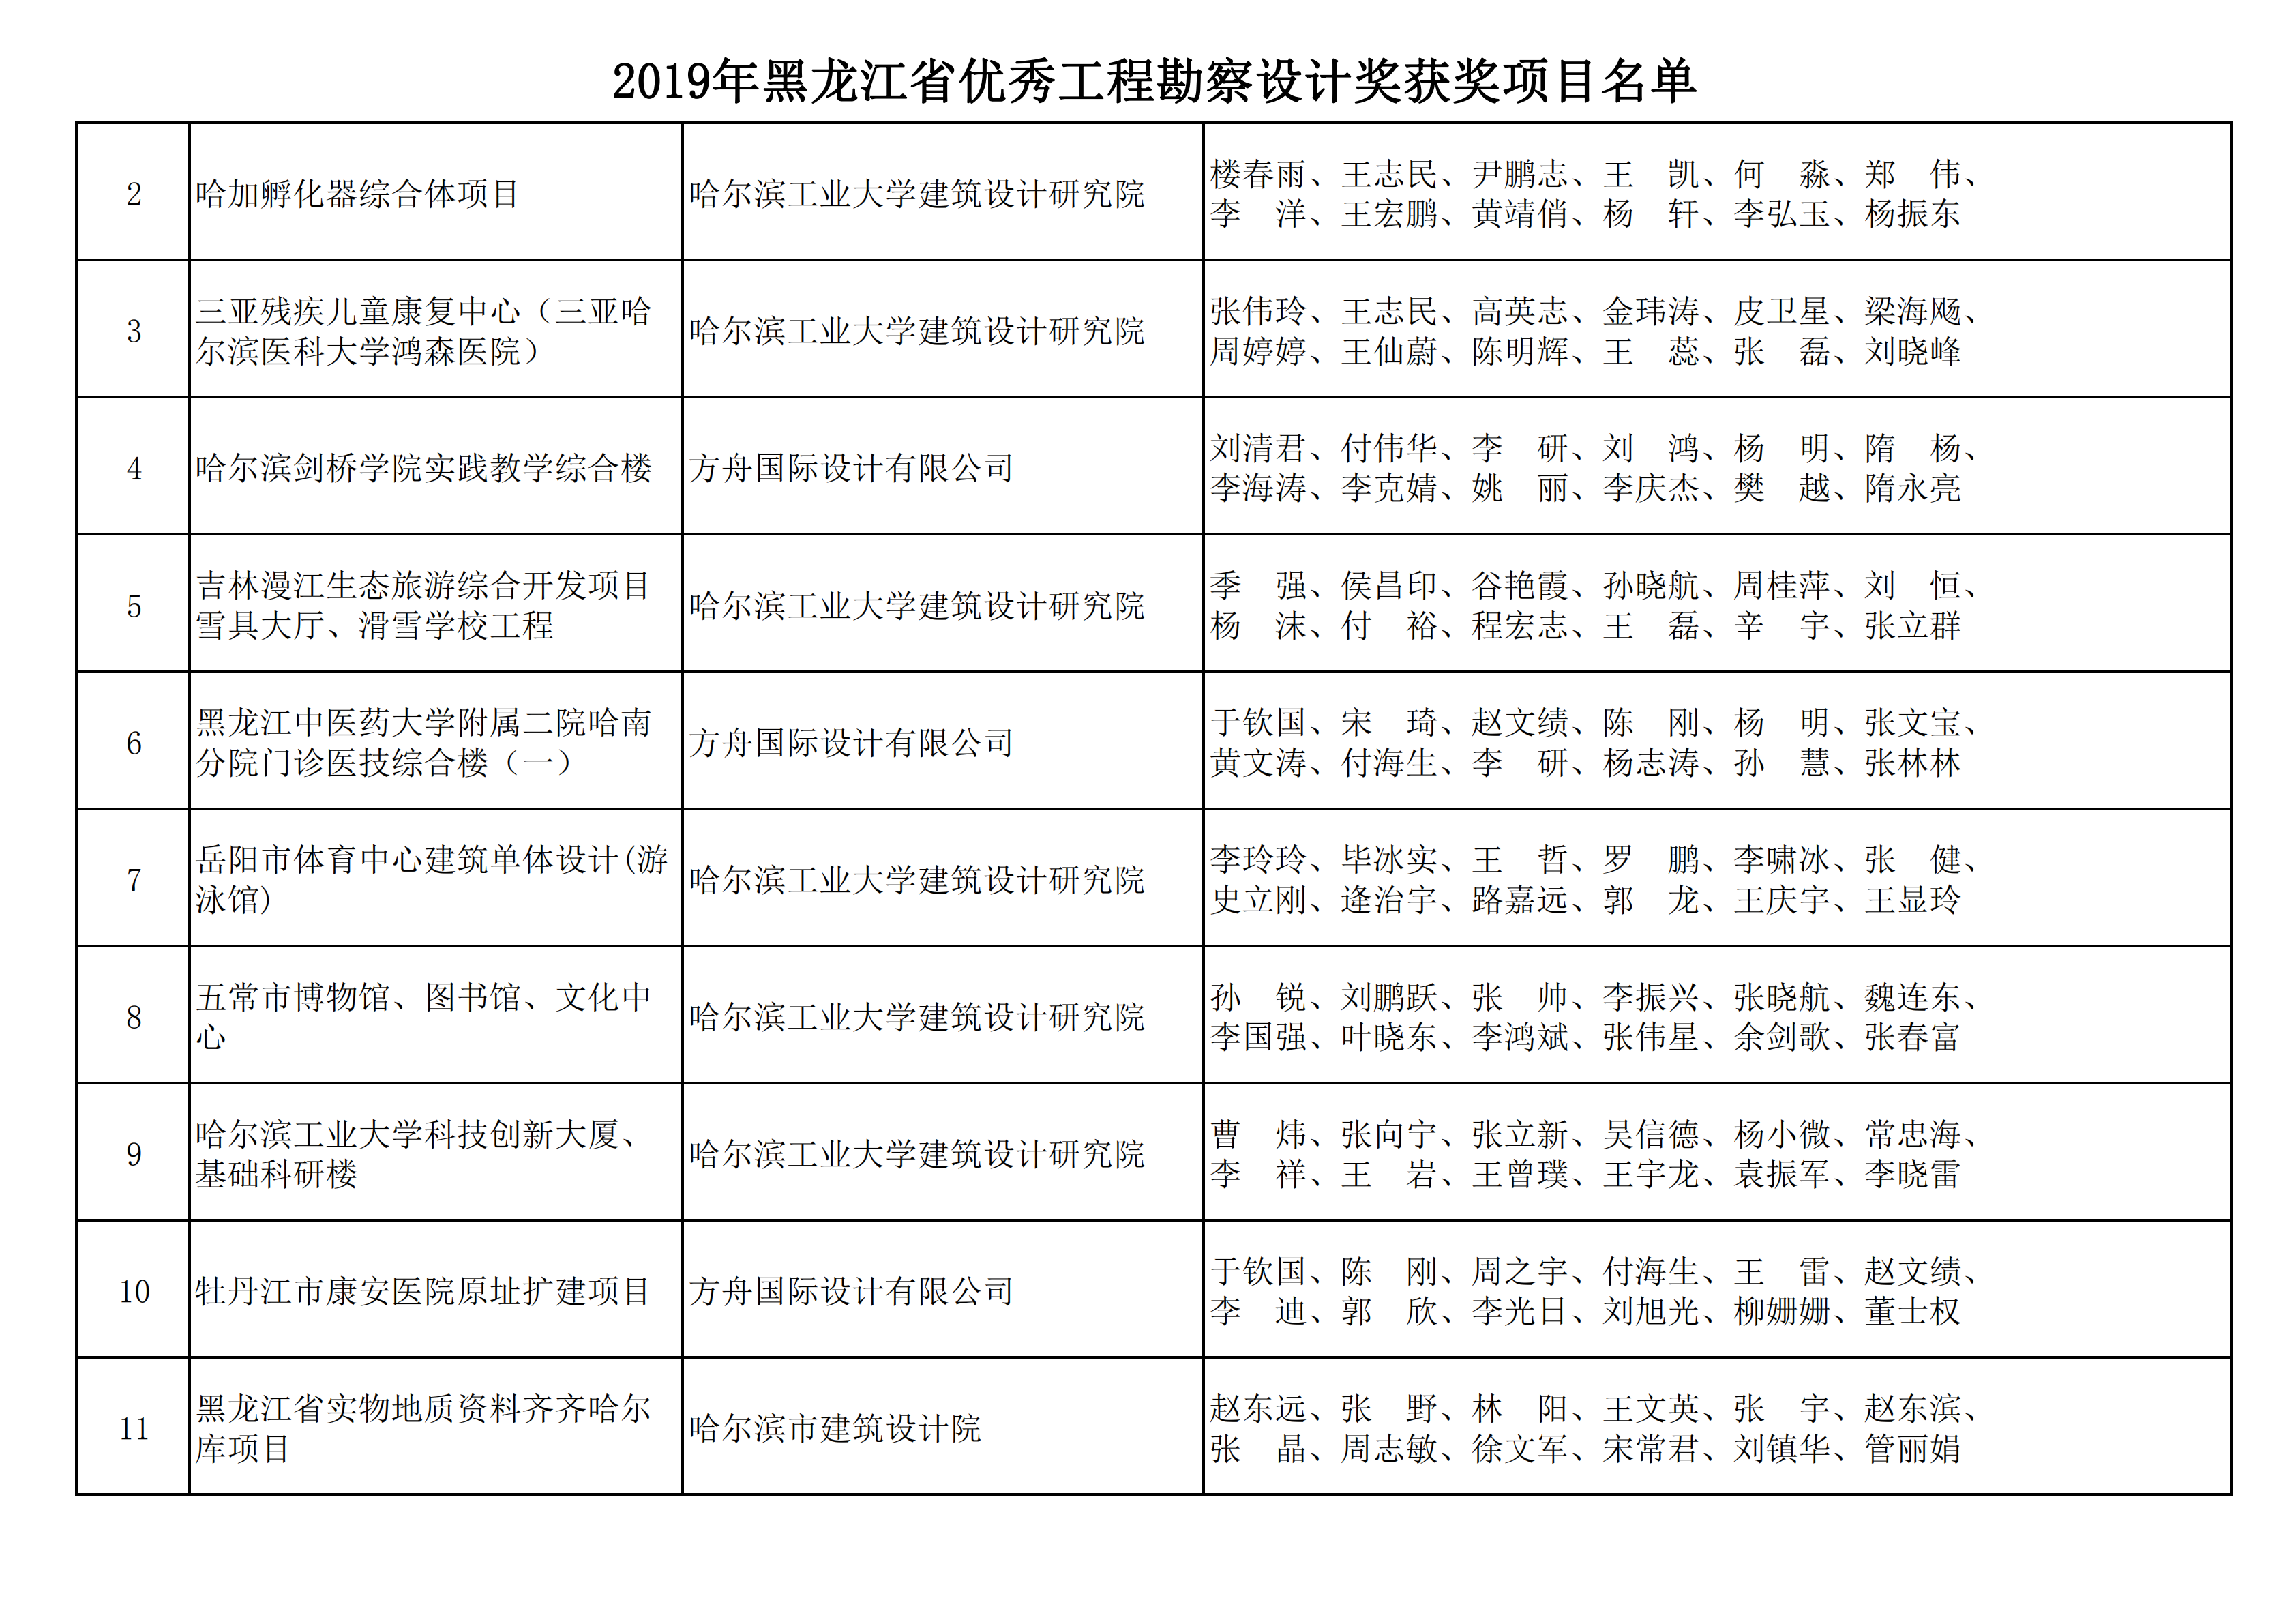 2019年黑龙江省优秀工程勘察设计奖获奖项目名单_01.png